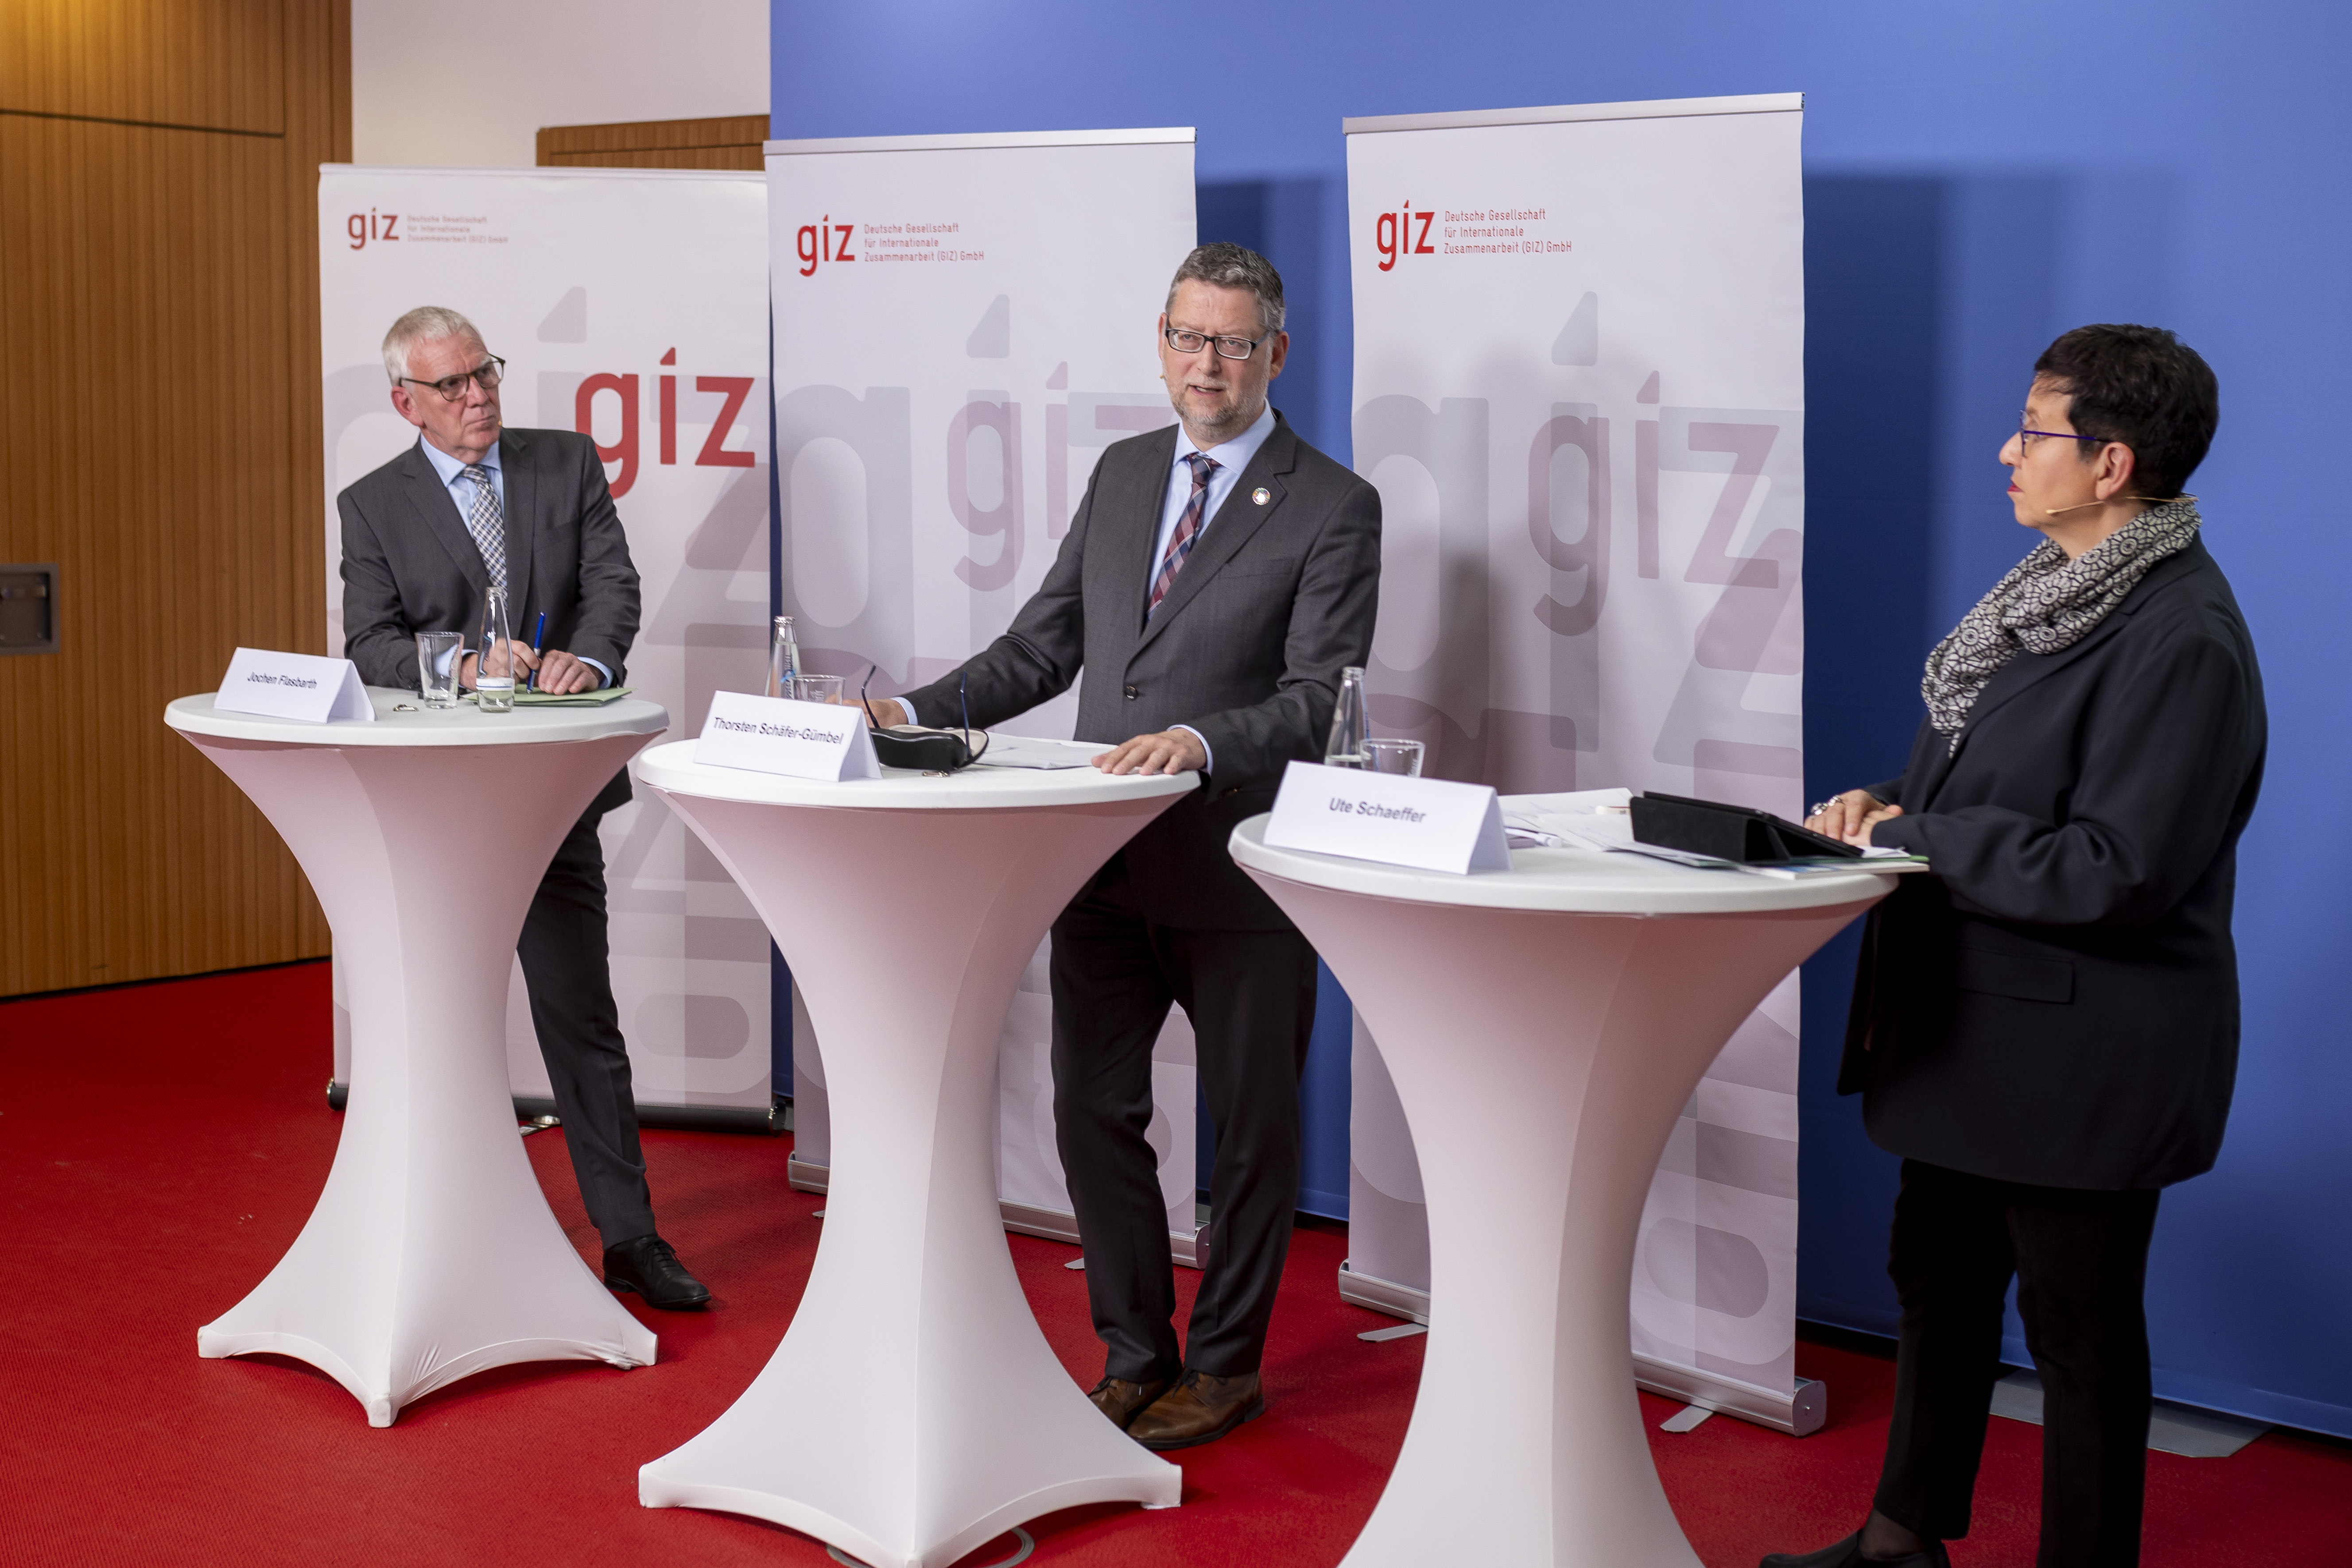 Jochen Flasbarth, Thorsten Schäfer-Gümbel und Ute Schaeffer an Rednerpulten vor GIZ-Bannern.